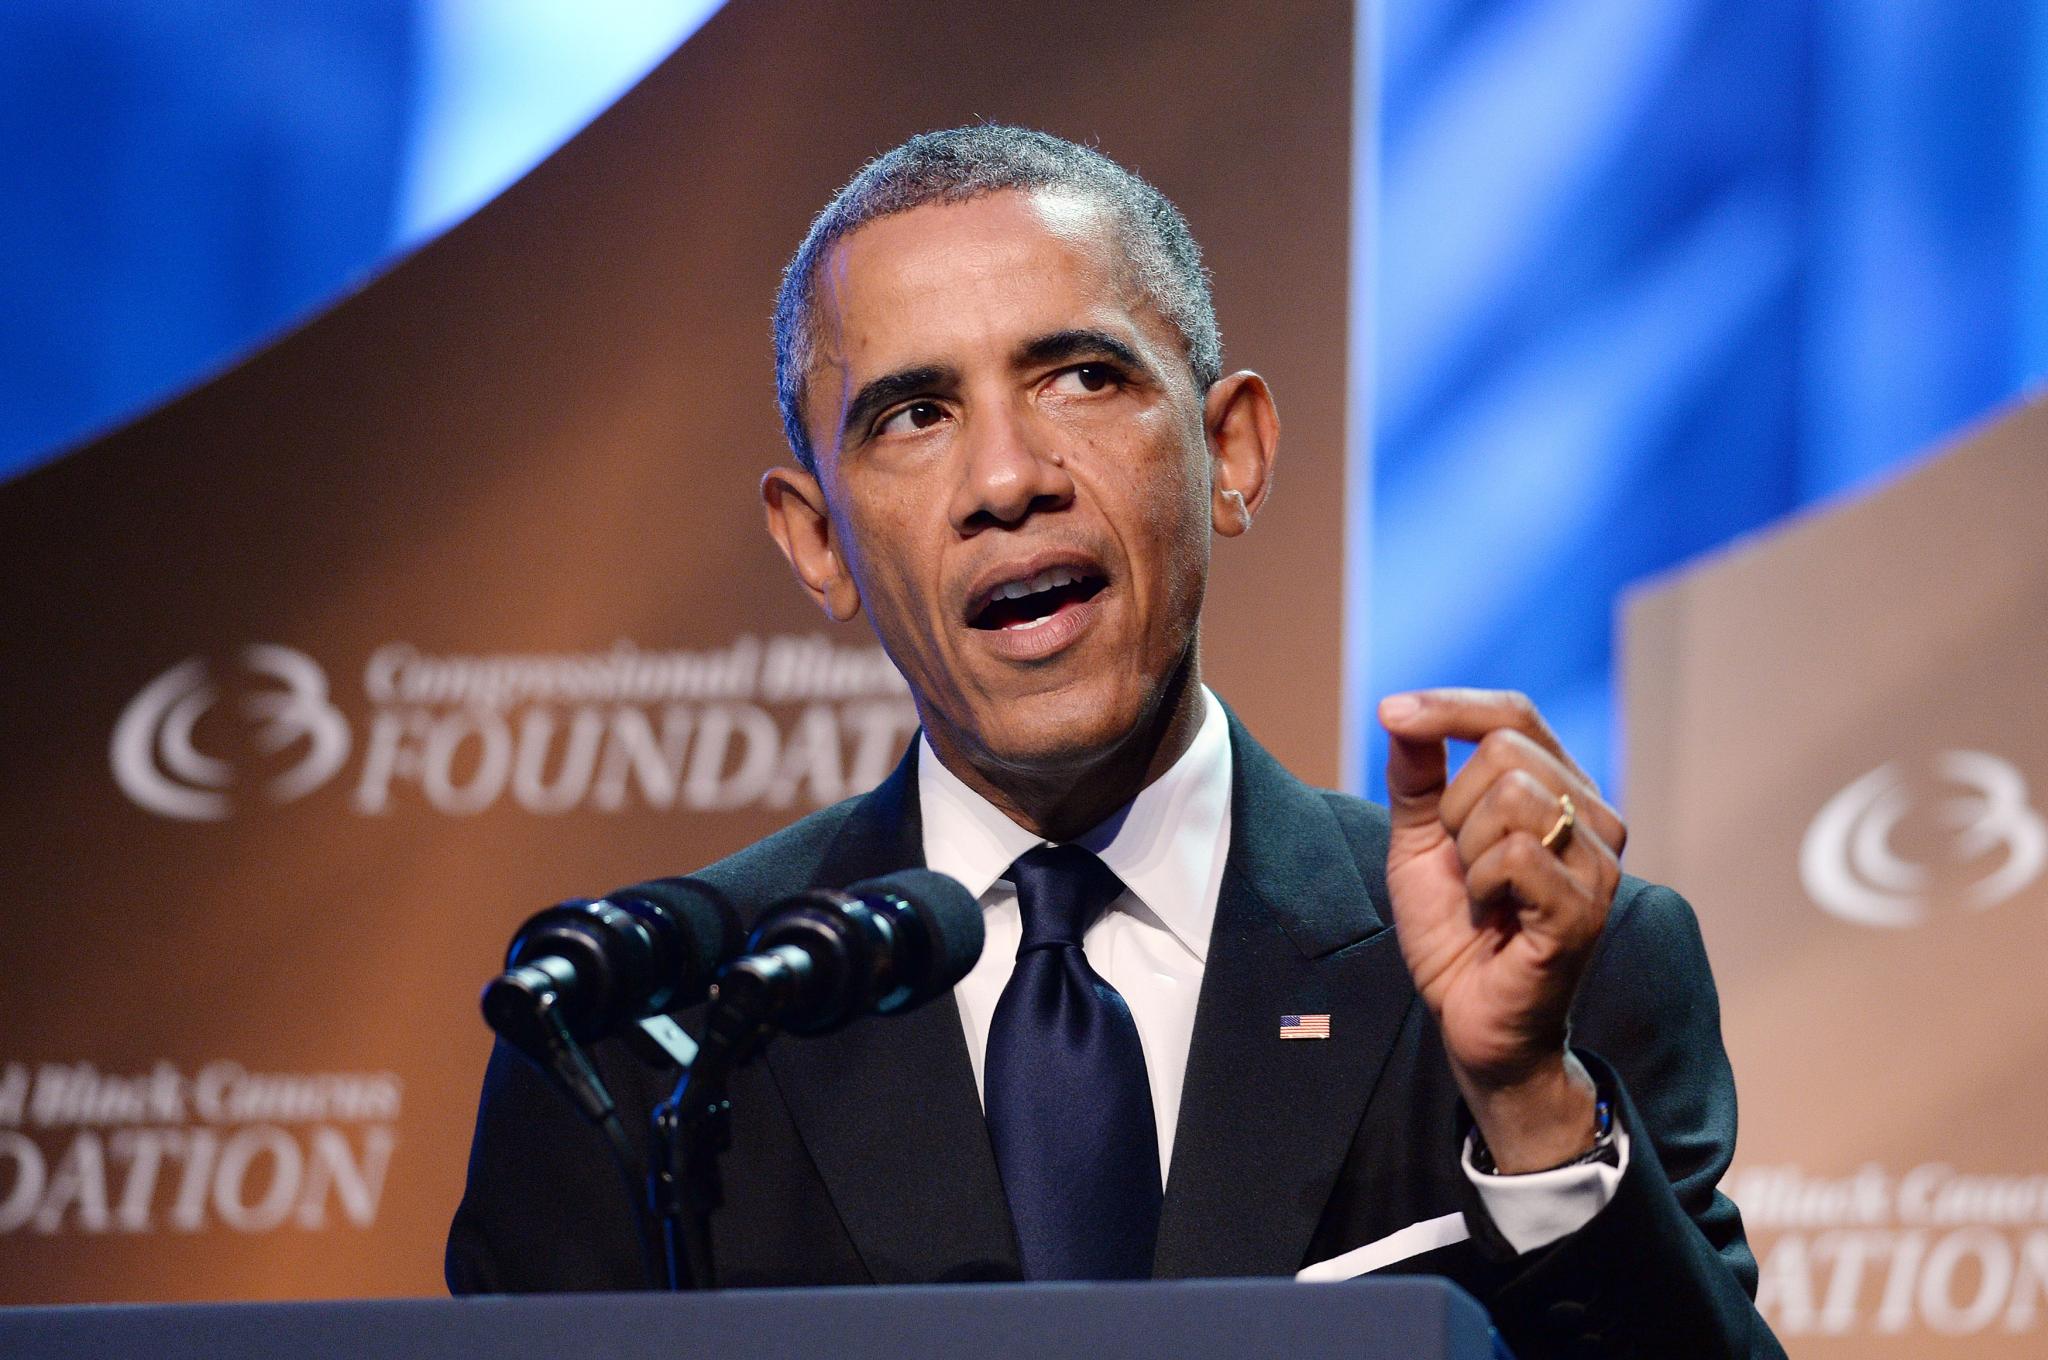 President Obama Addresses Mistrust of Law Enforcement in U.S.